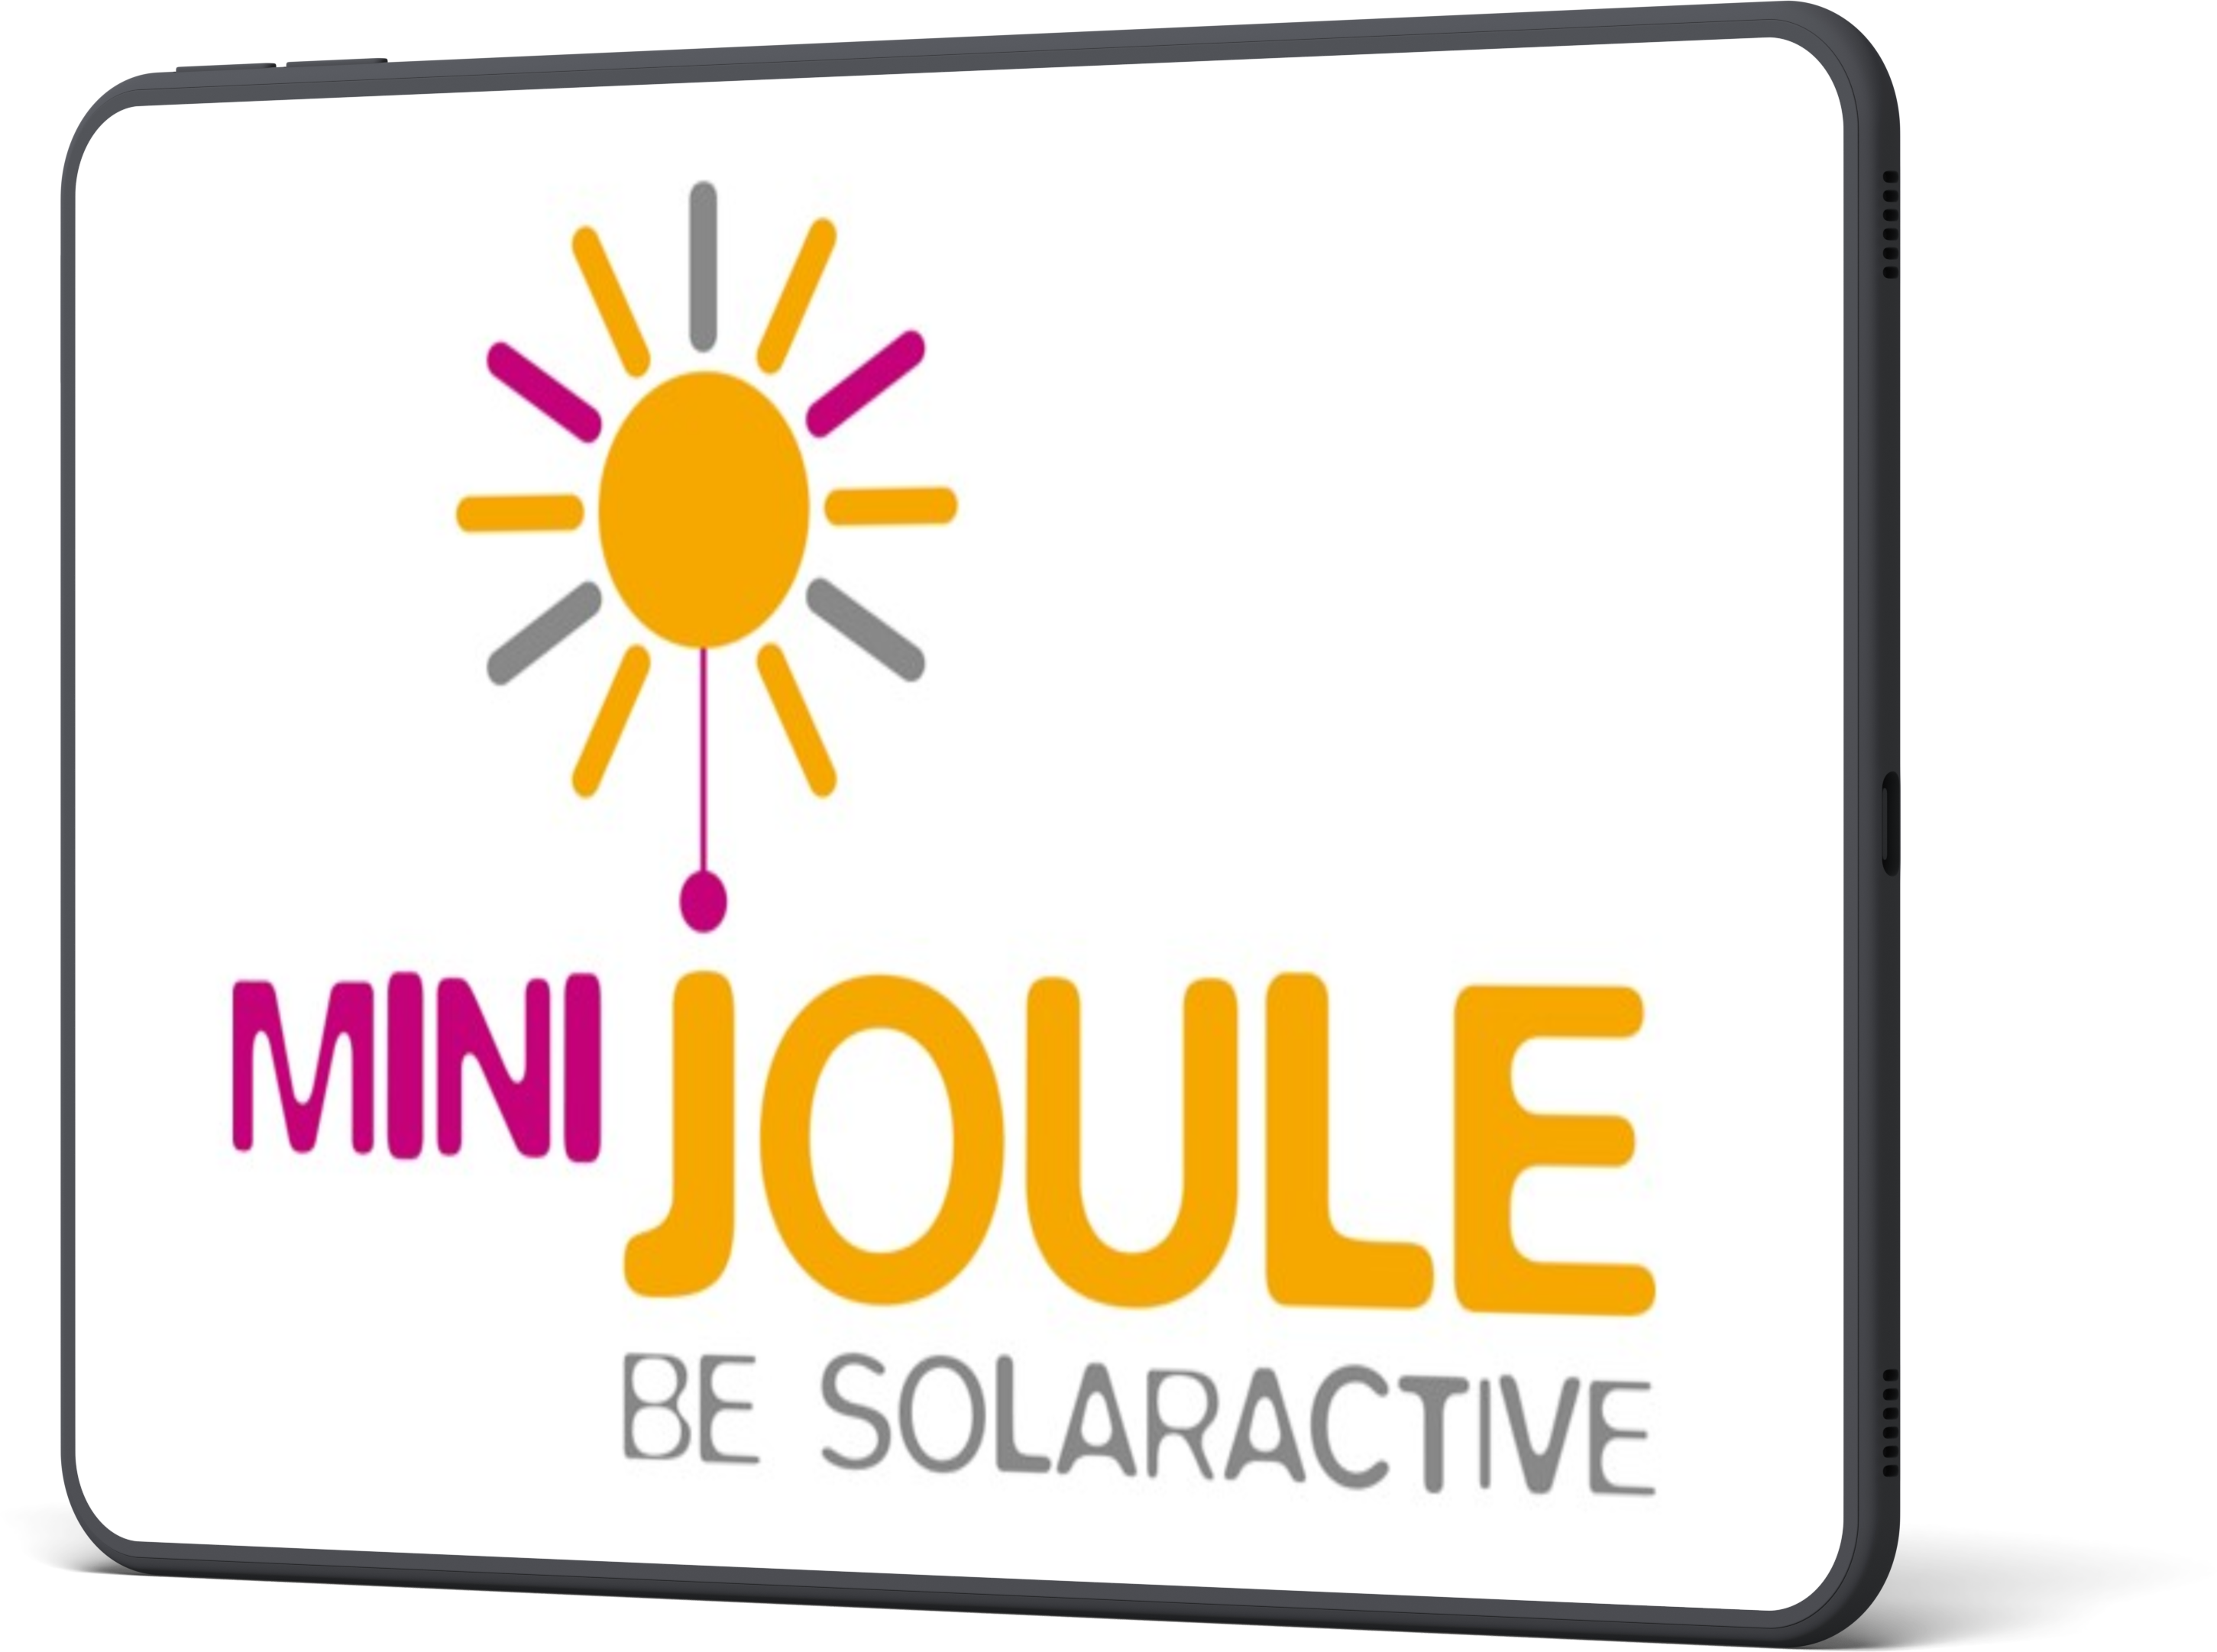 miniJOULE Logo in iPad